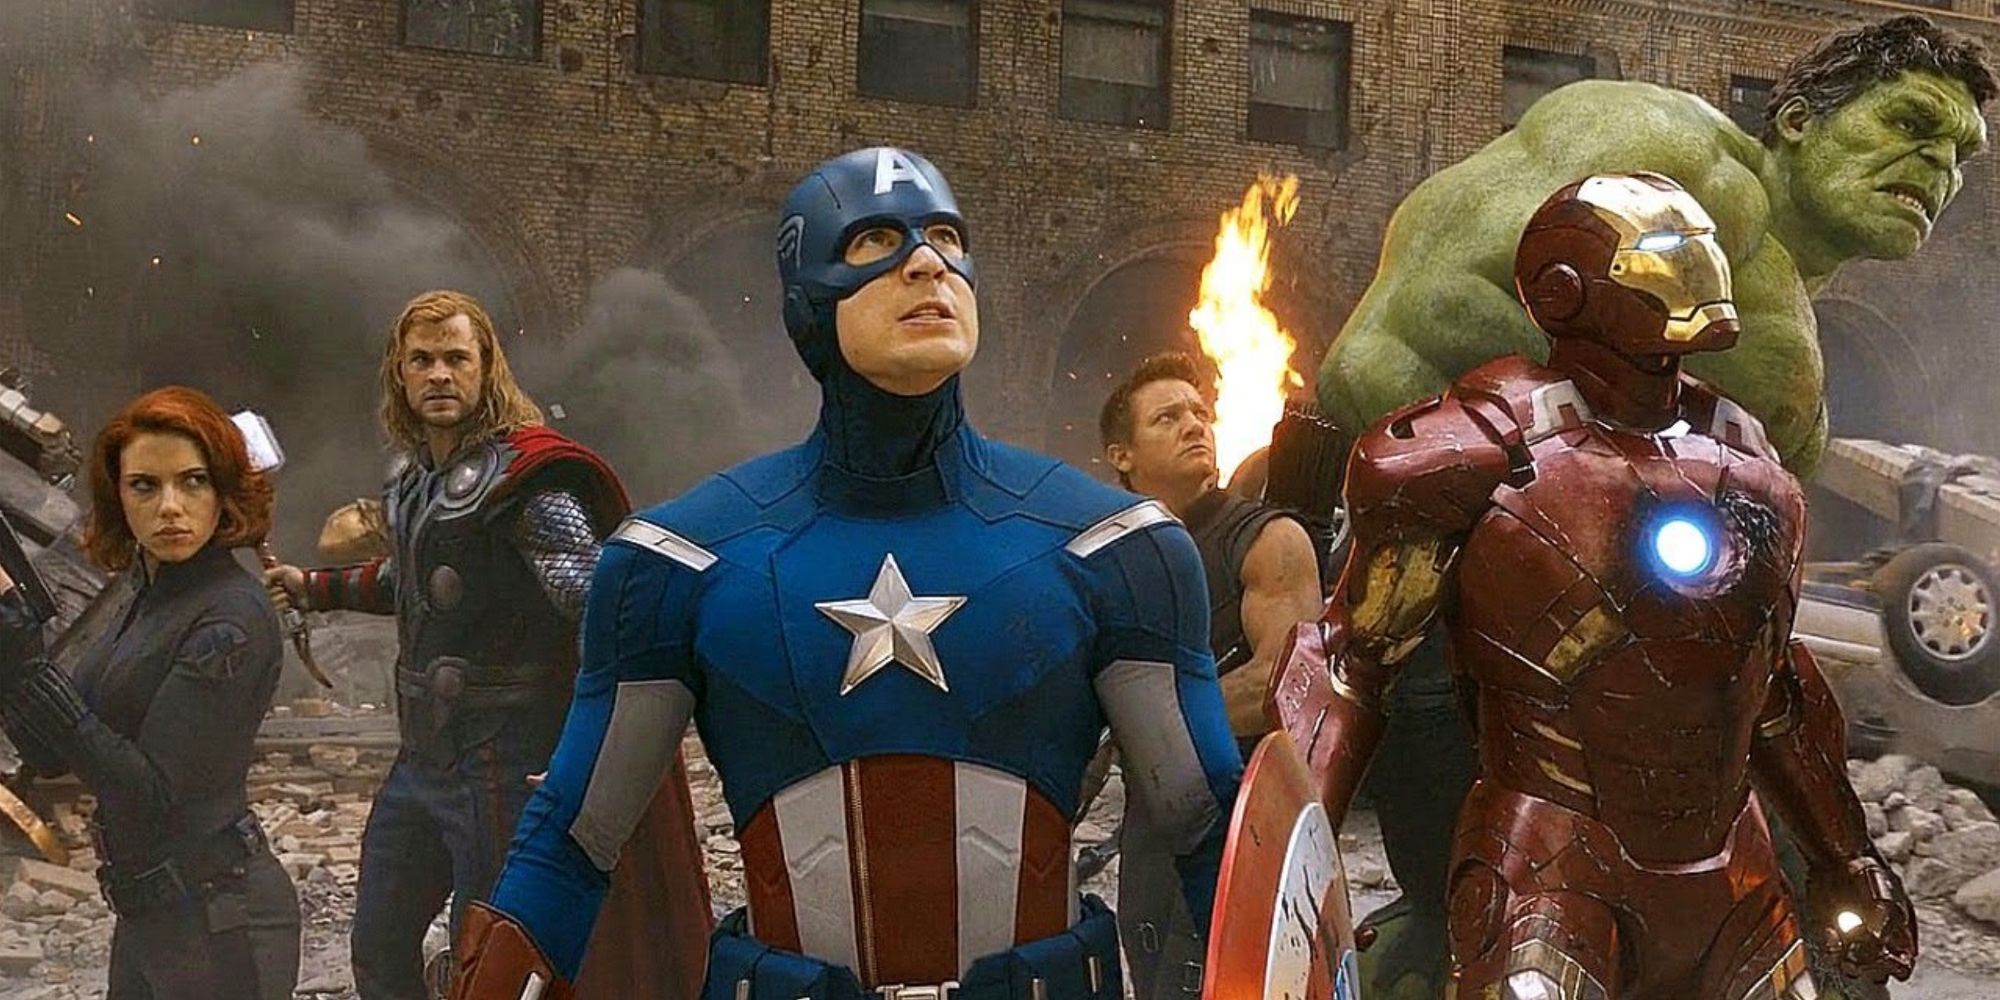 The OG 6 Avengers united in the battle of New York